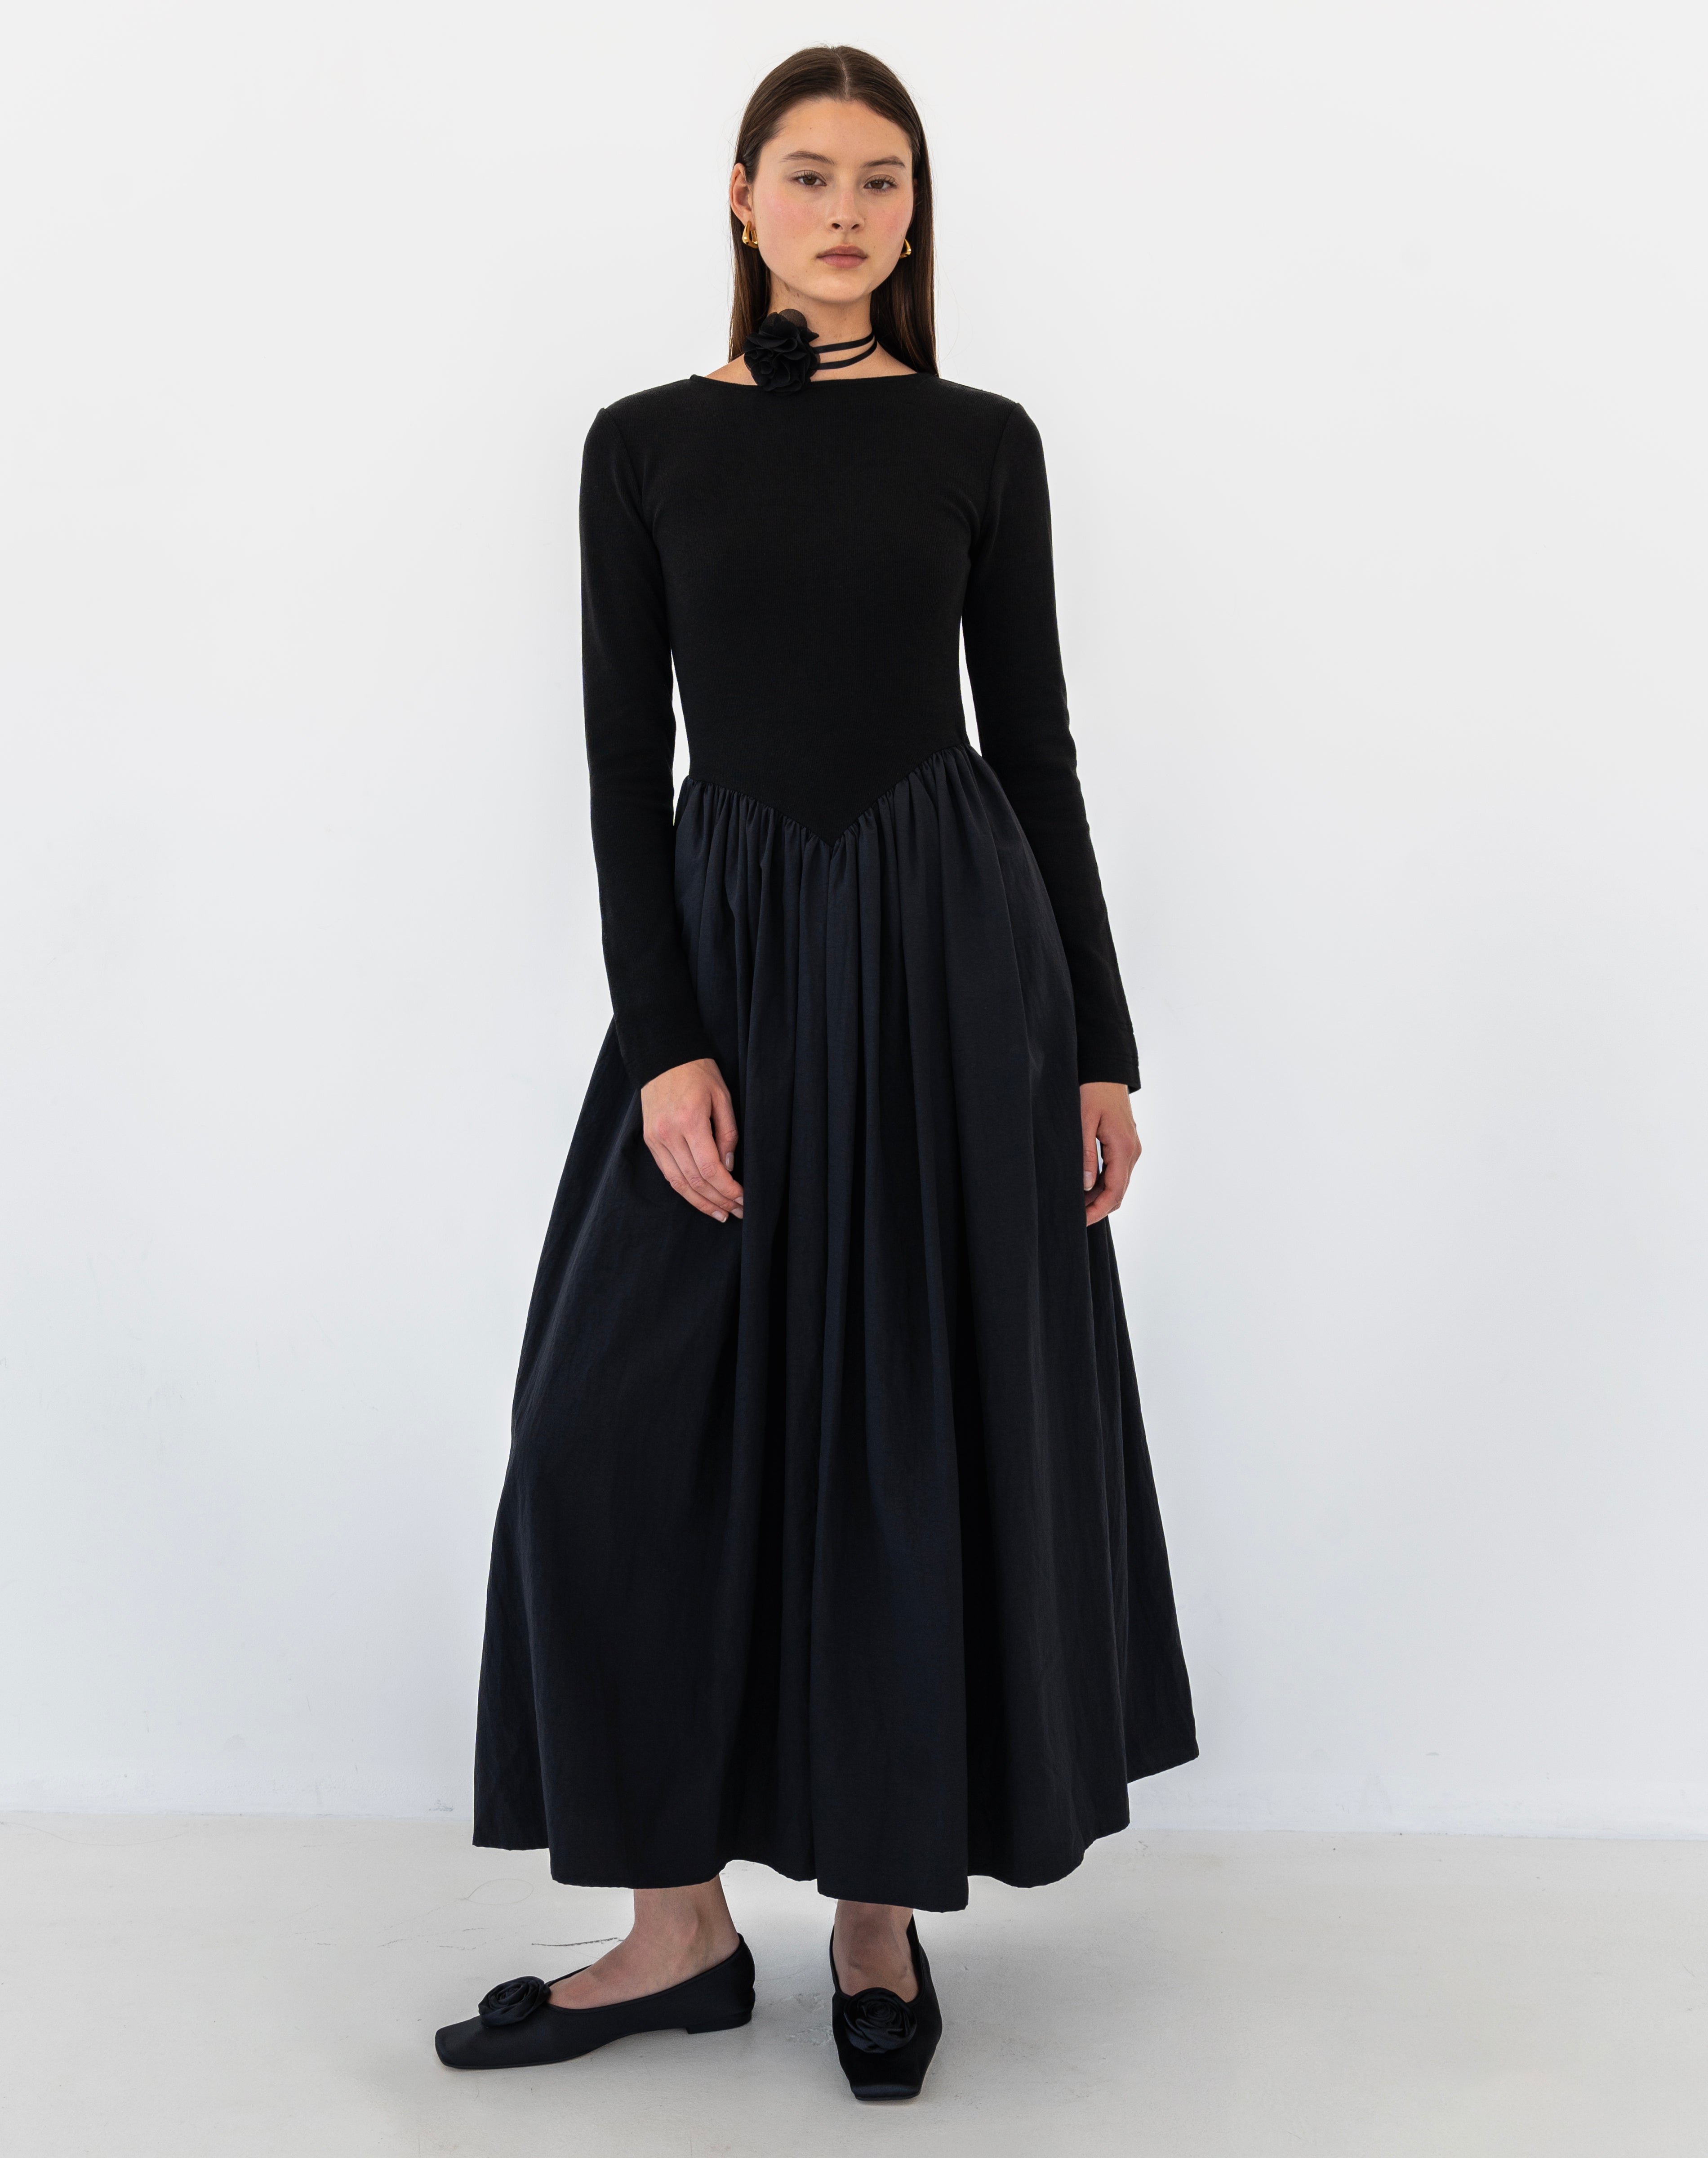 Kira Basque Waist Maxi Dress, Black